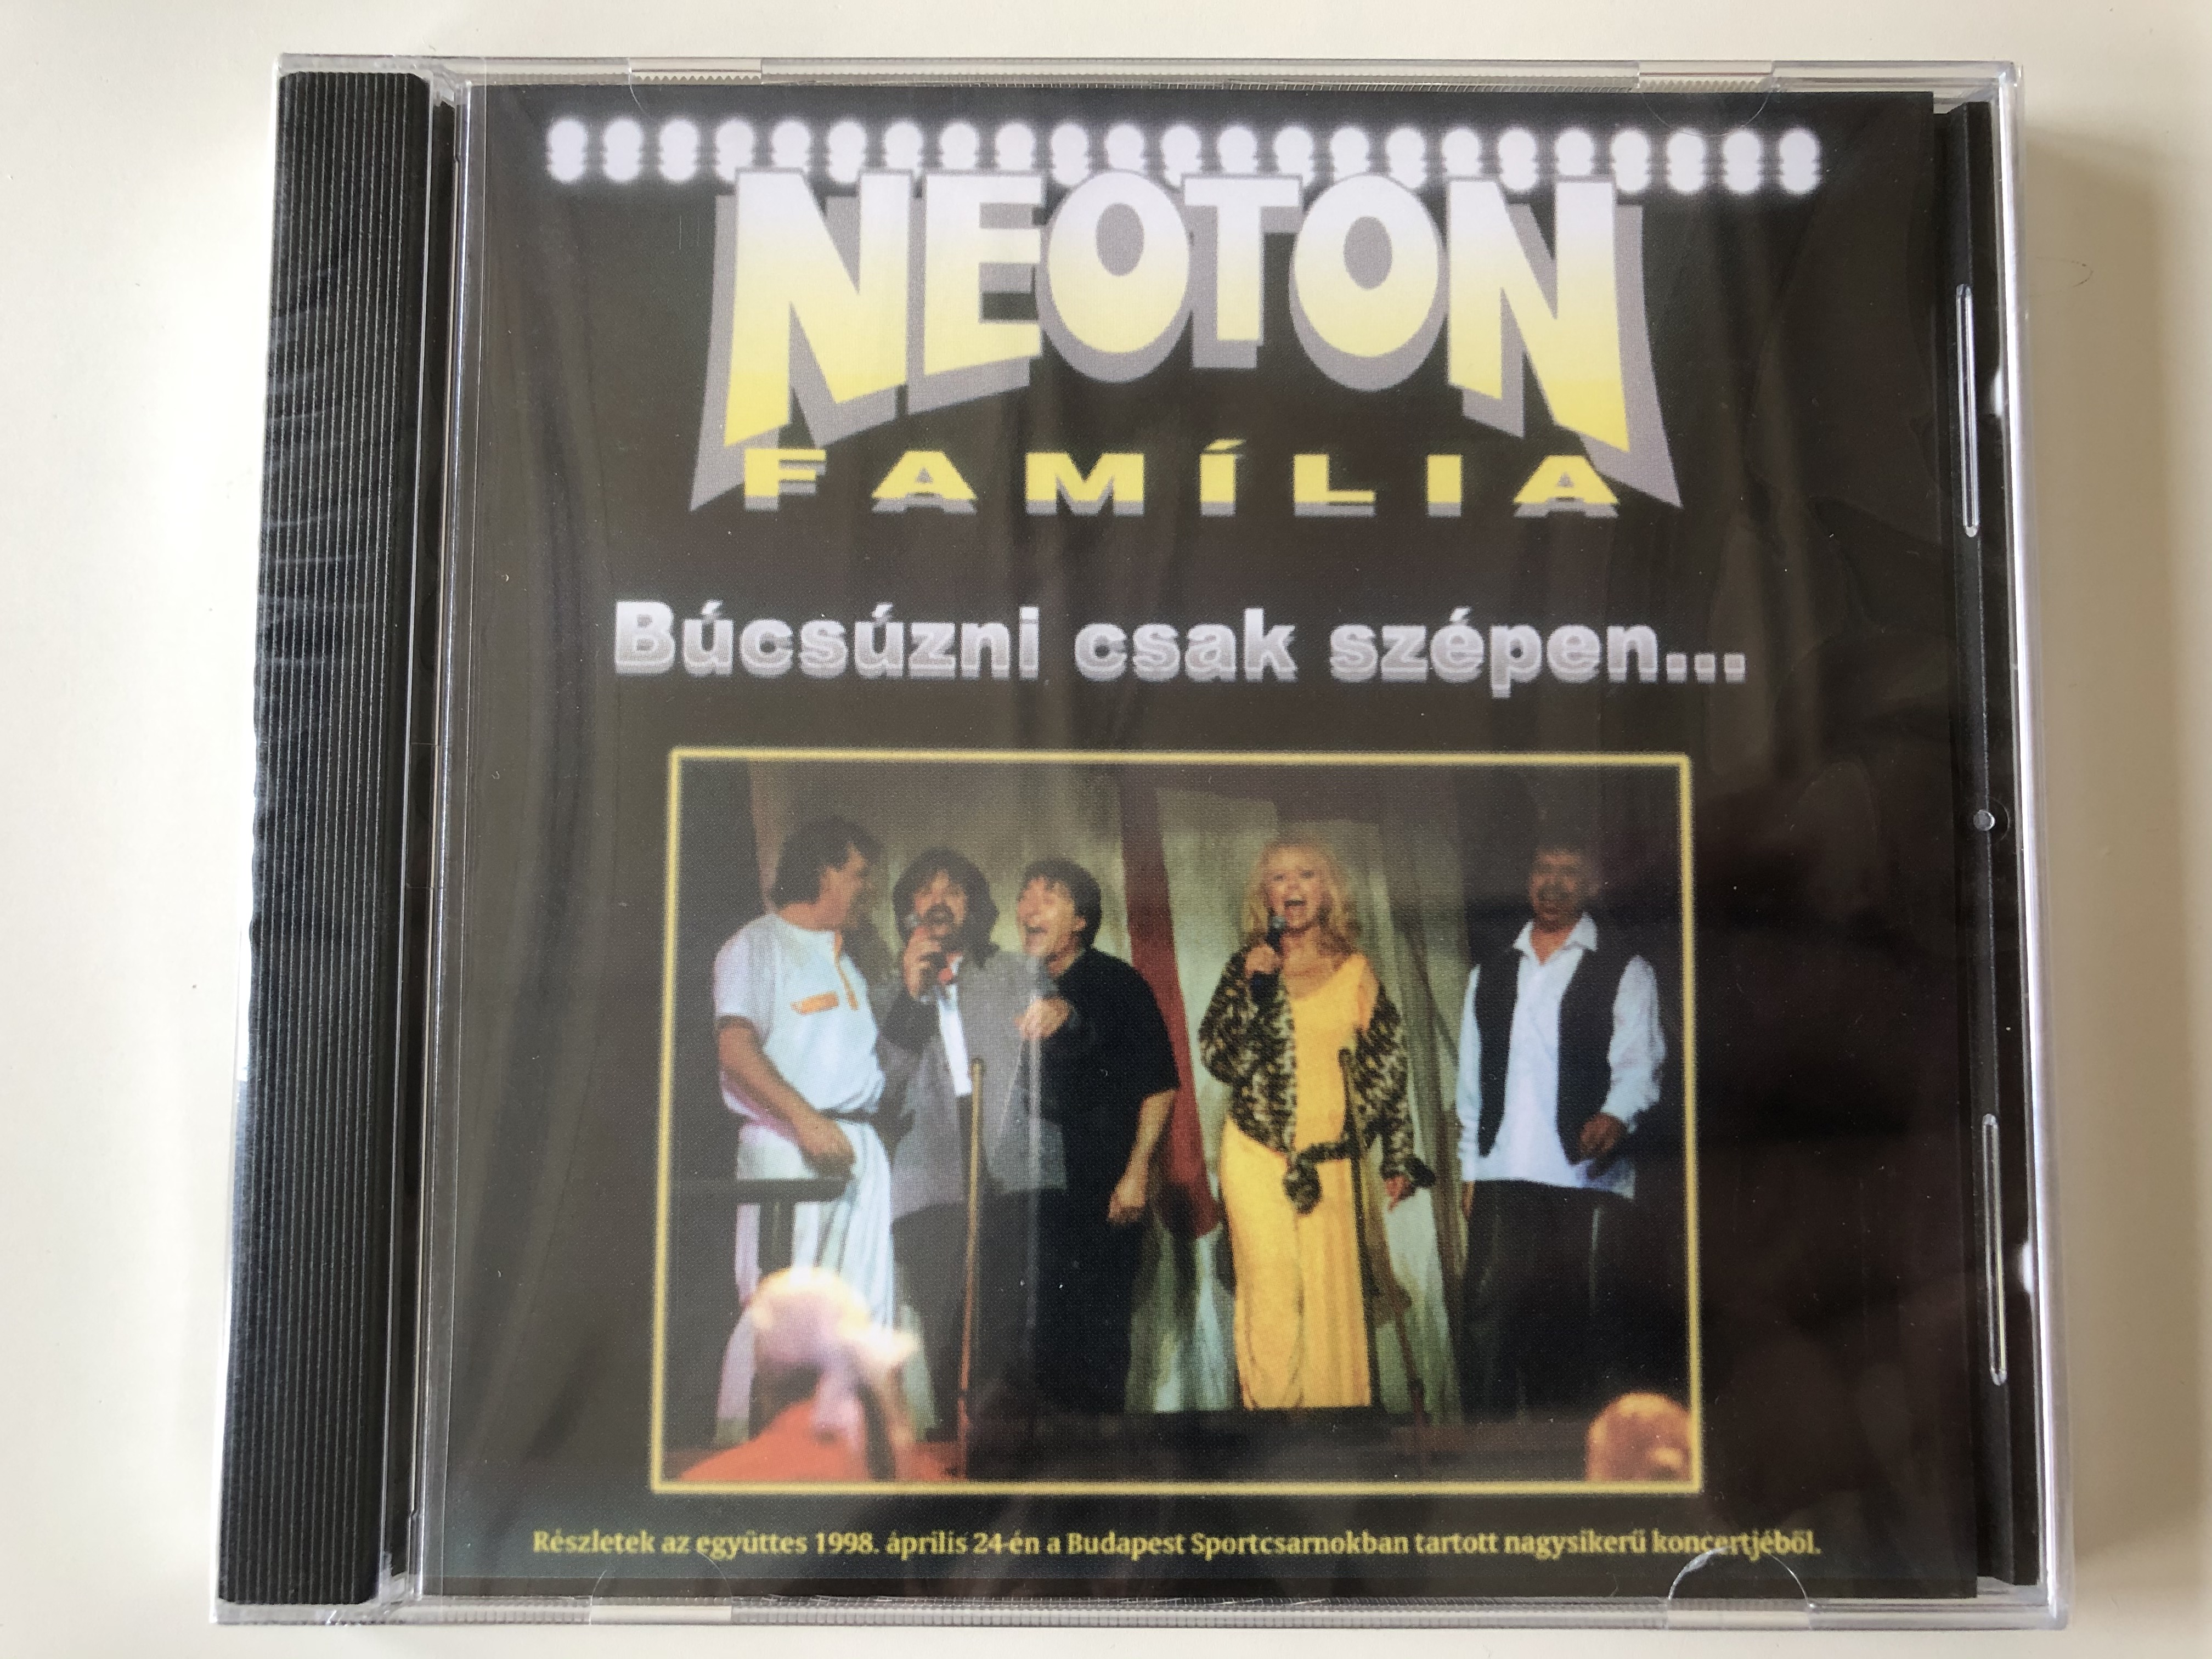 neoton-fam-lia-b-cs-zni-csak-sz-pen...-reszletek-az-egyuttes-1998.-aprilis-24-en-a-budapest-sportcsarnokban-tartott-nagysikeru-koncertjebol.-magneoton-audio-cd-63984-24085-23-1-.jpg